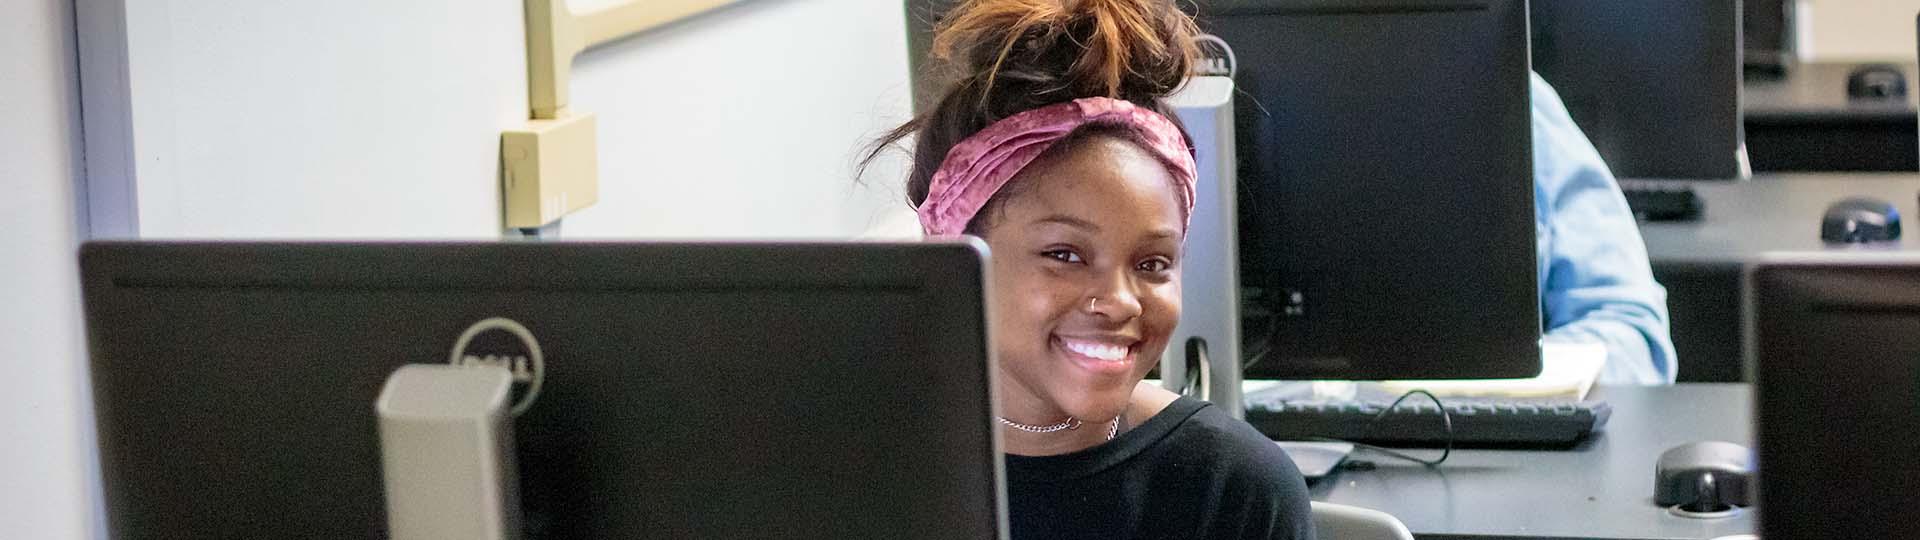 Tulane SoPA student sitting at a computer station and smiling at the camera